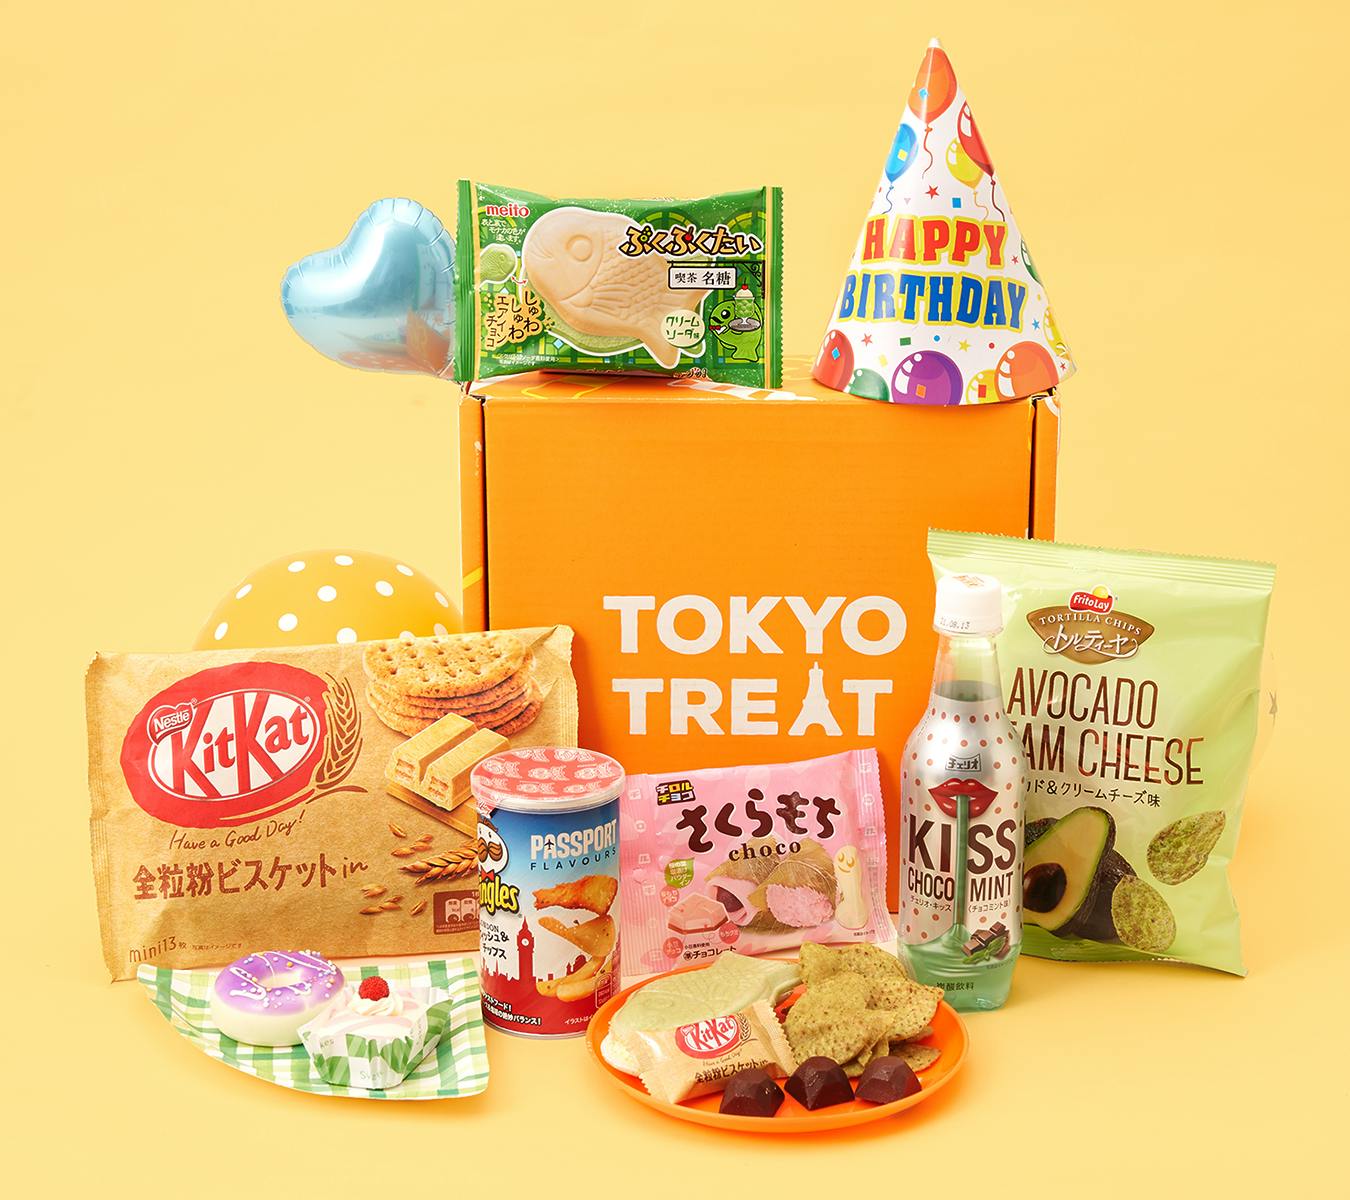 TokyoTreat - Happy 6th Birthday TokyoTreat snack box